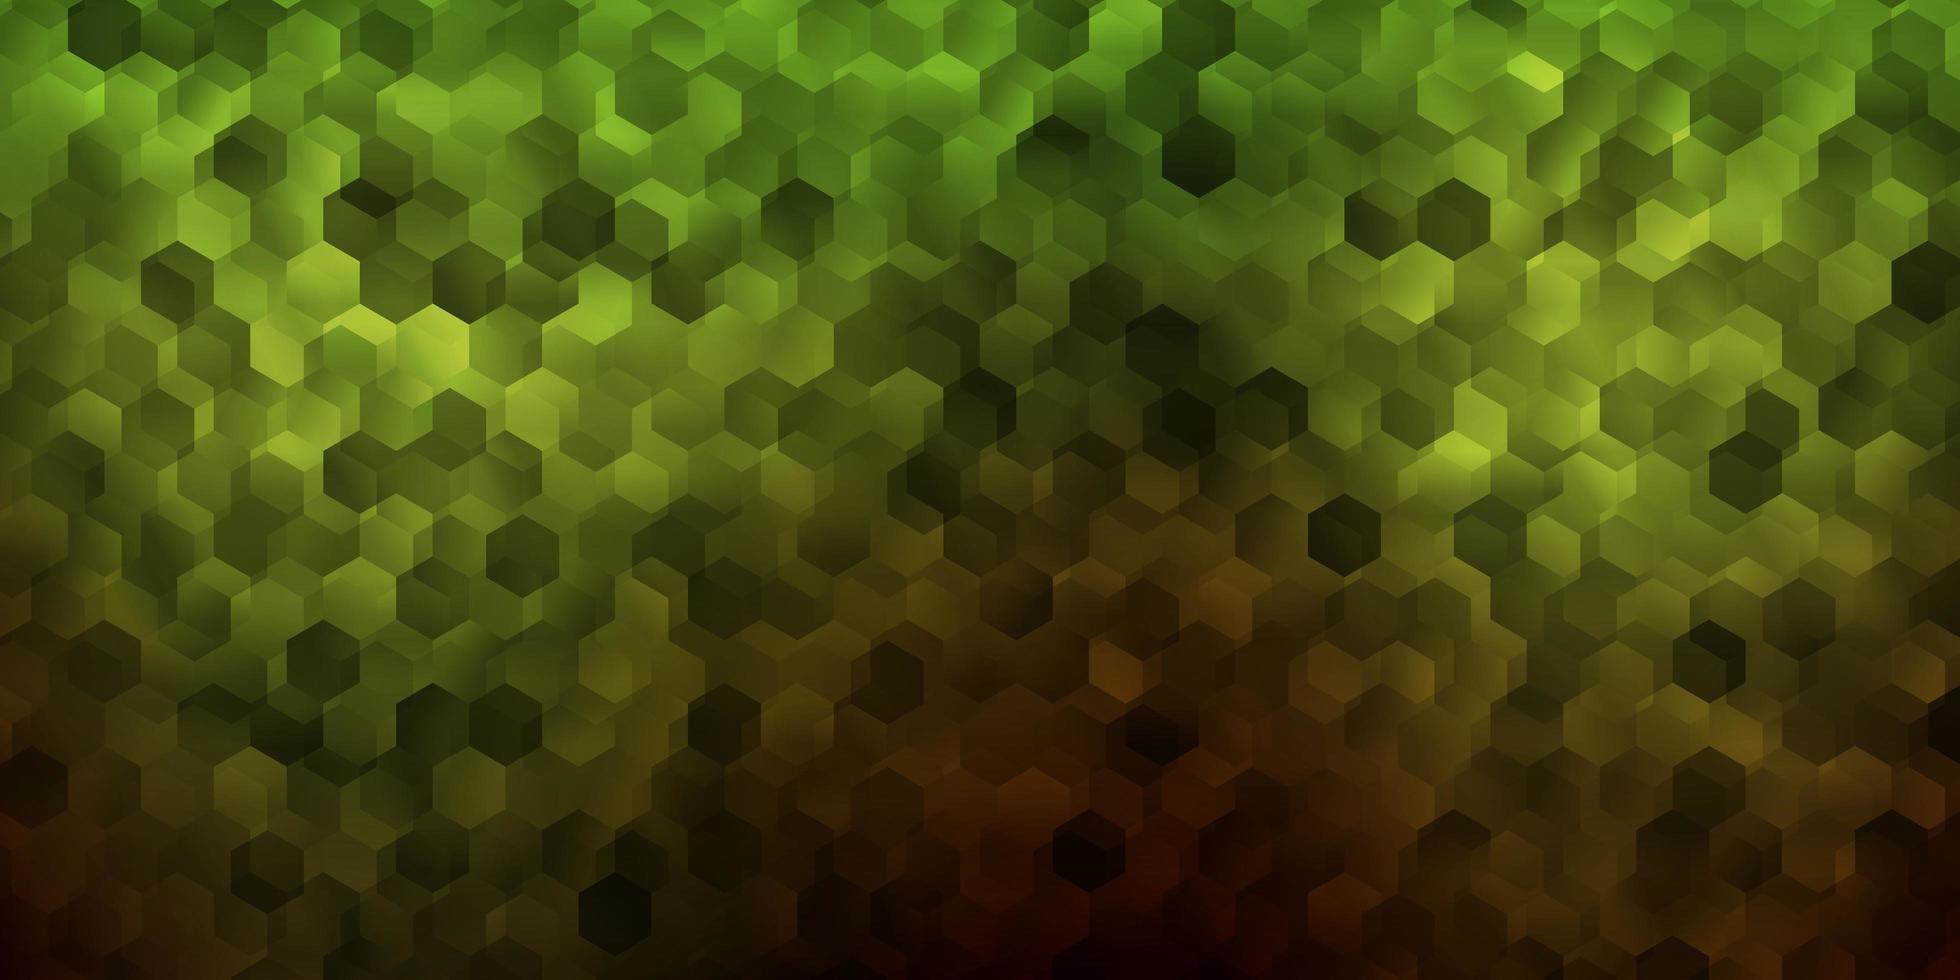 texture de vecteur vert foncé, jaune avec des hexagones colorés.